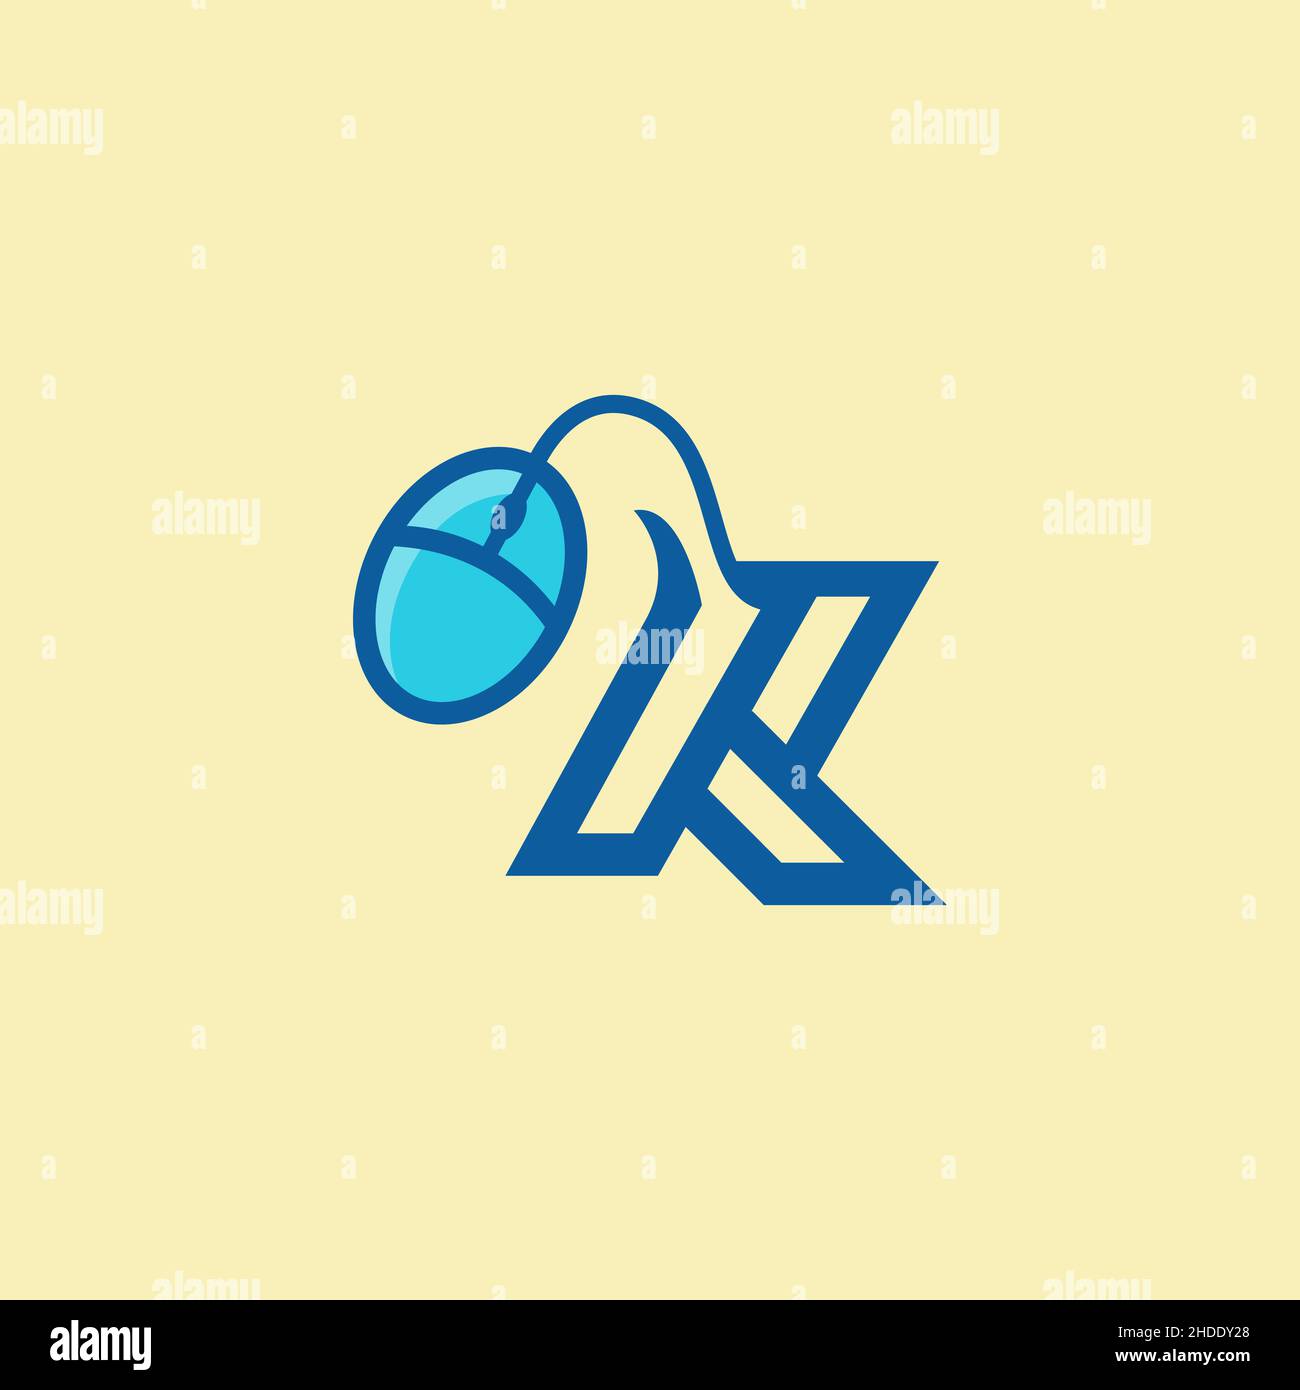 Logo de jeu moderne.Icône de la souris avec forme de K dernière vecteur fond blanc isolé.EPS 10 Illustration de Vecteur